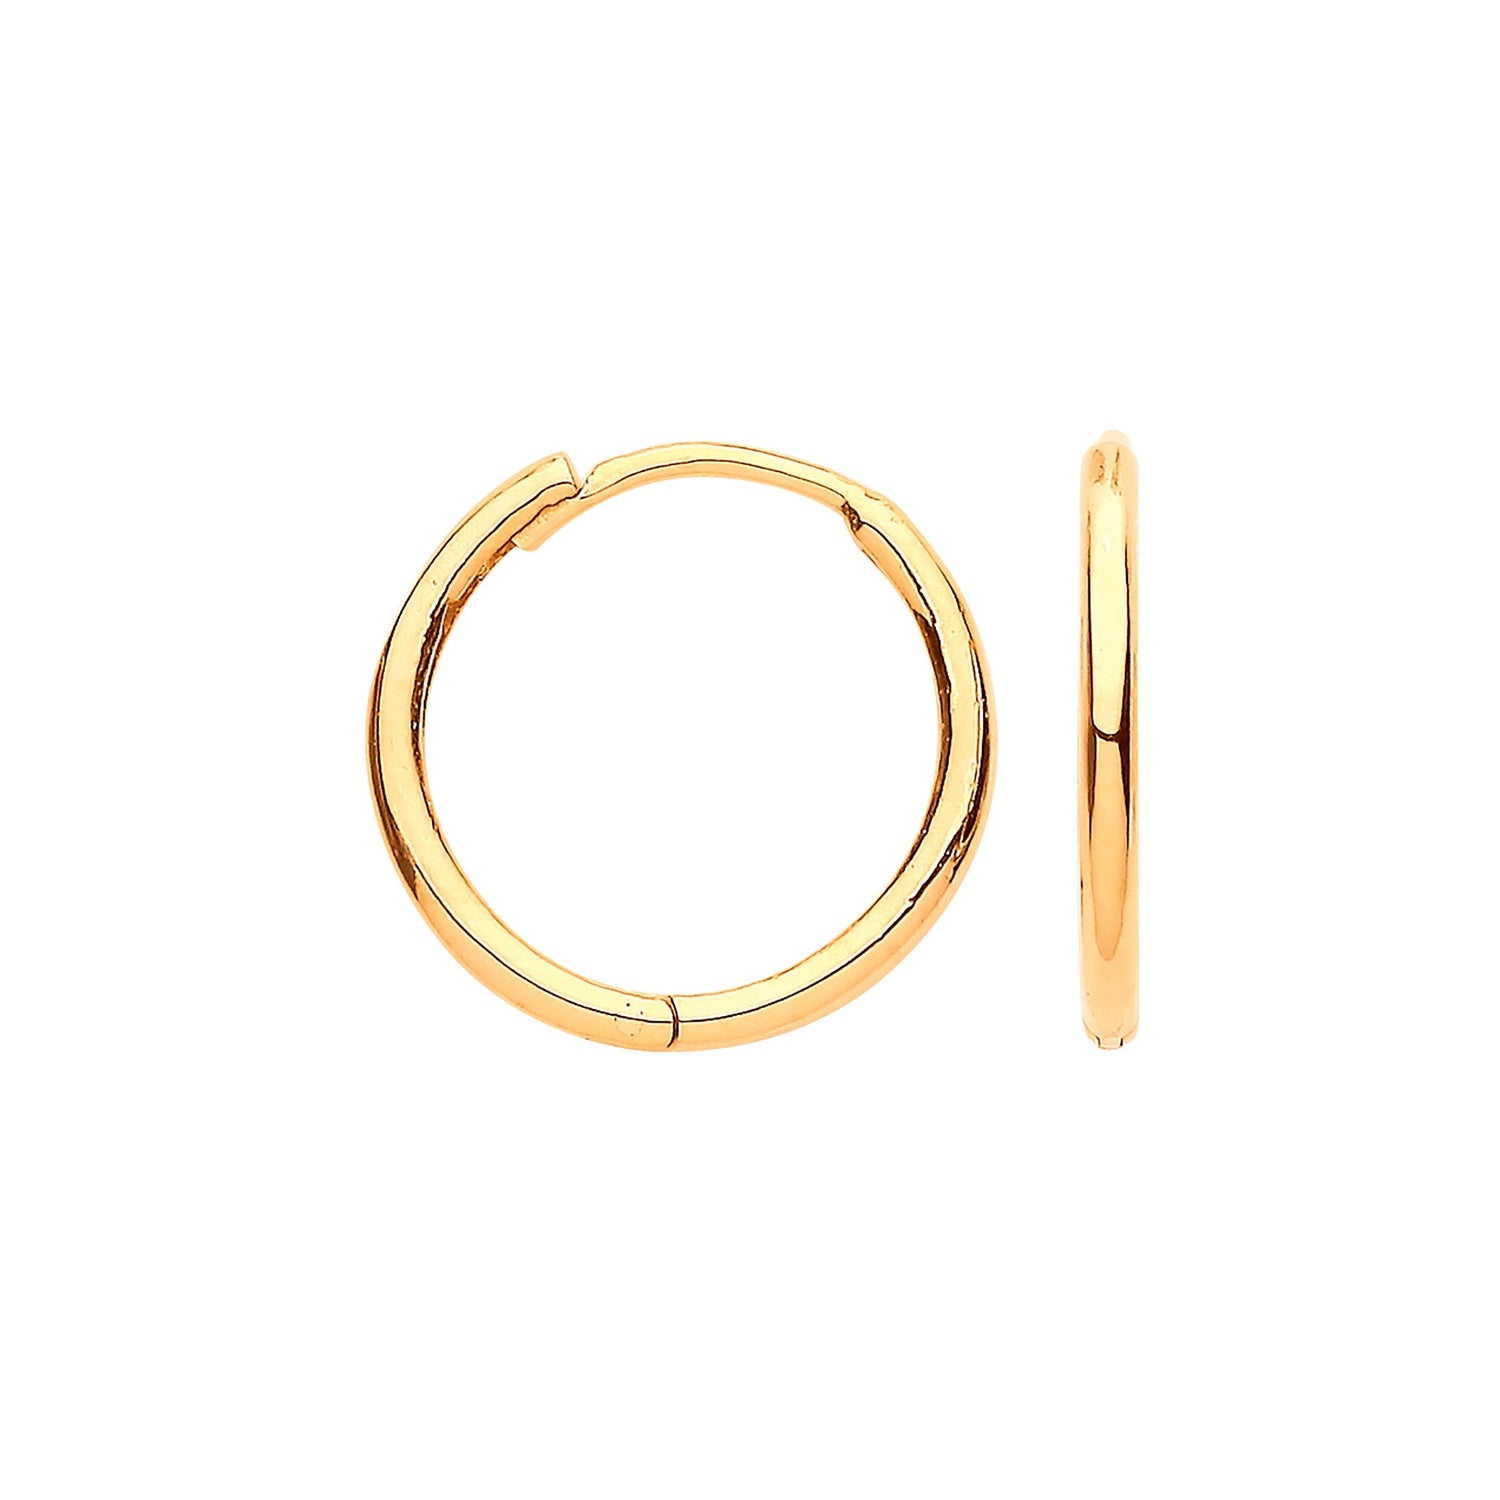 9ct Gold Hoop Earrings Plain Hinged Huggies (14mm) - Robert Anthony Jewellers, Edinburgh